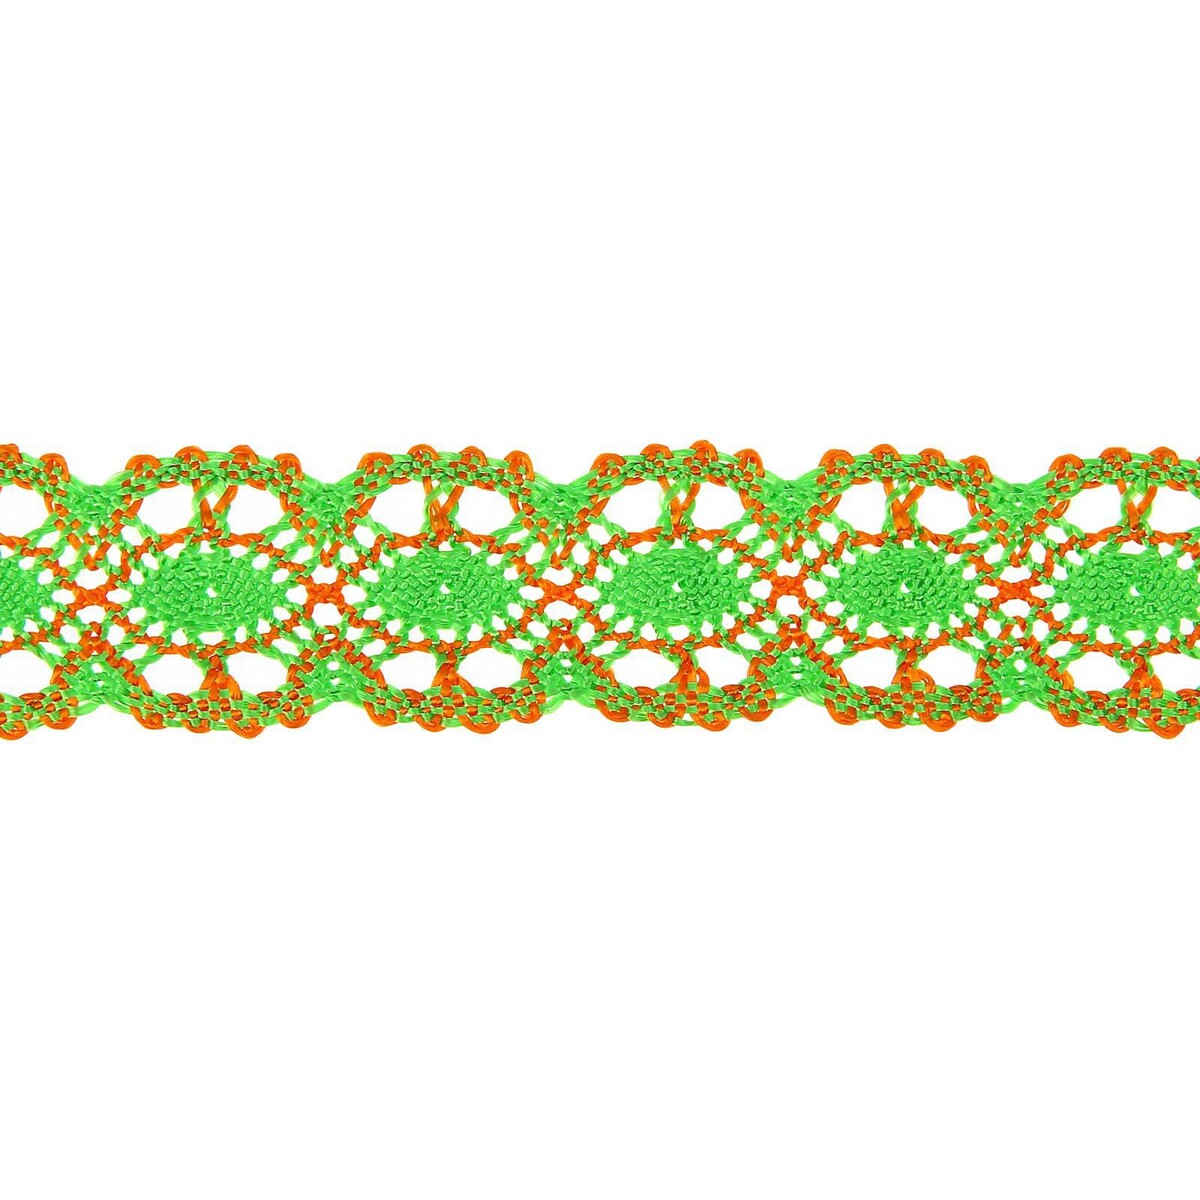 Тесьма плетеная оранжево-зеленая в рулоне 20 метров калька чертёжная под карандаш ширина 625 мм в рулоне 10 метров 40 г м² в пп плёнке